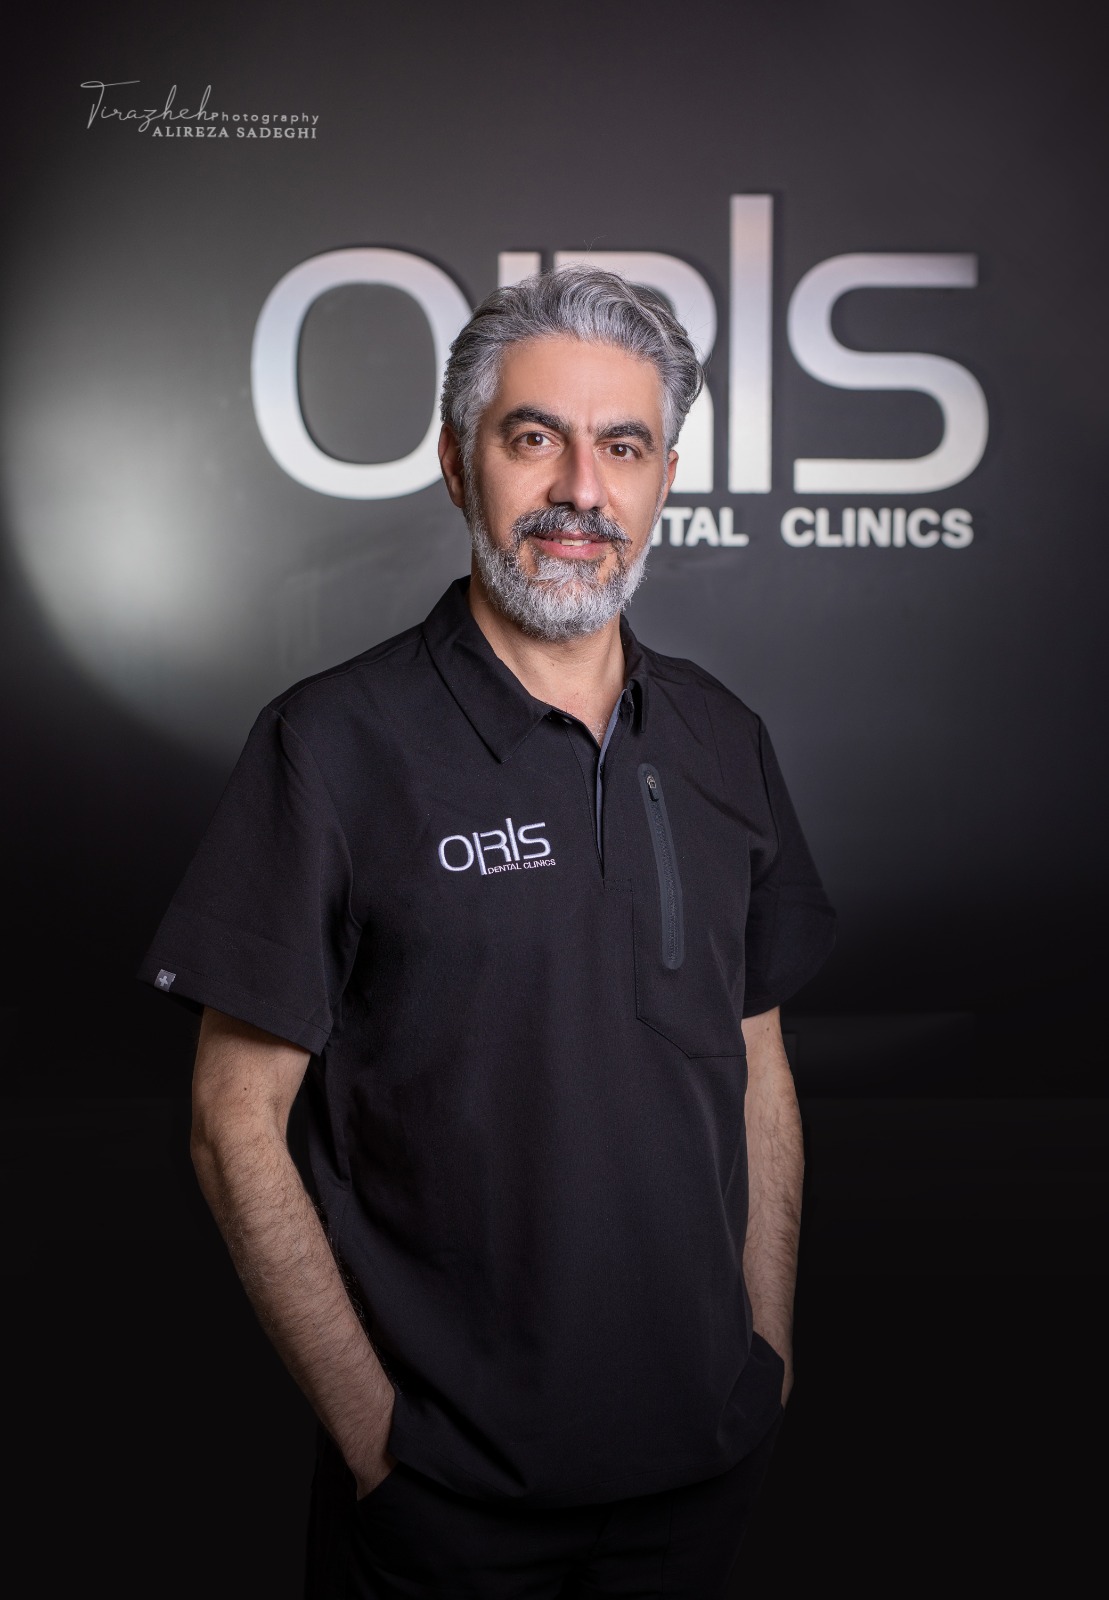 Dr. Maziar Shahzad Dowlatshahi at Oris Dental Clinics